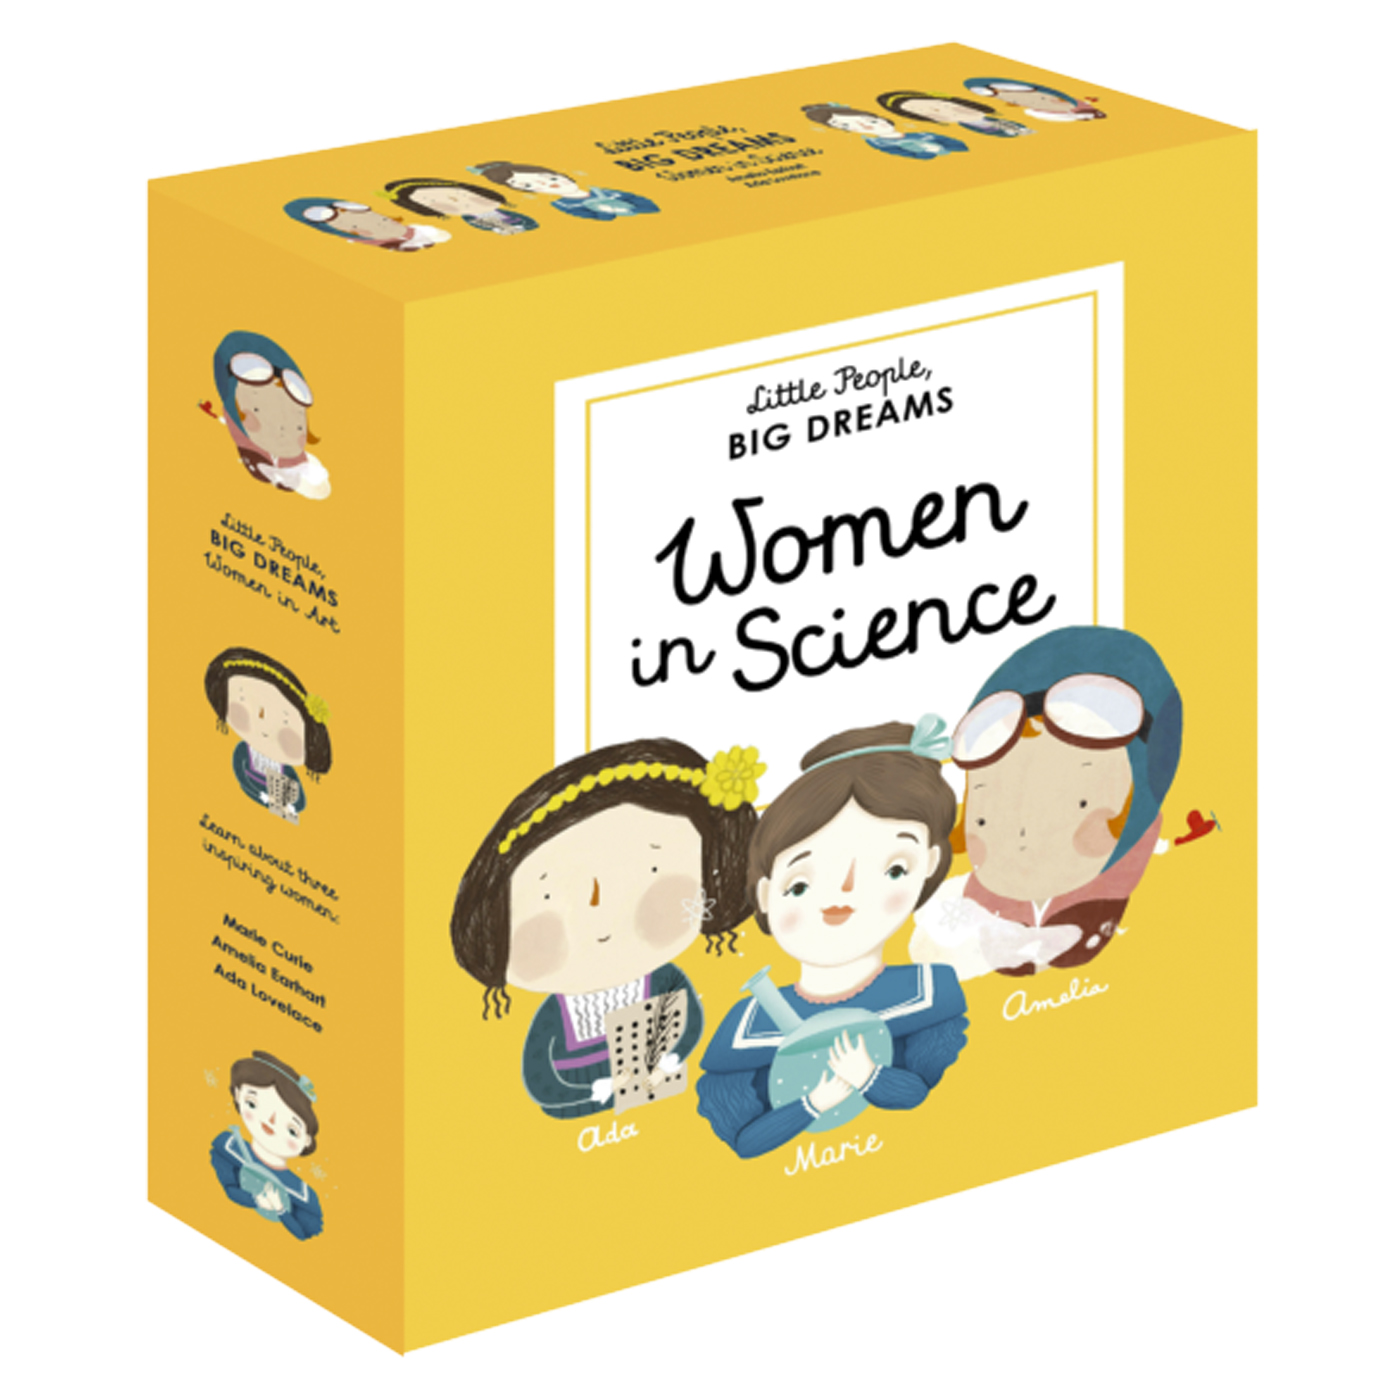  Little People Big Dreams: Women in Science